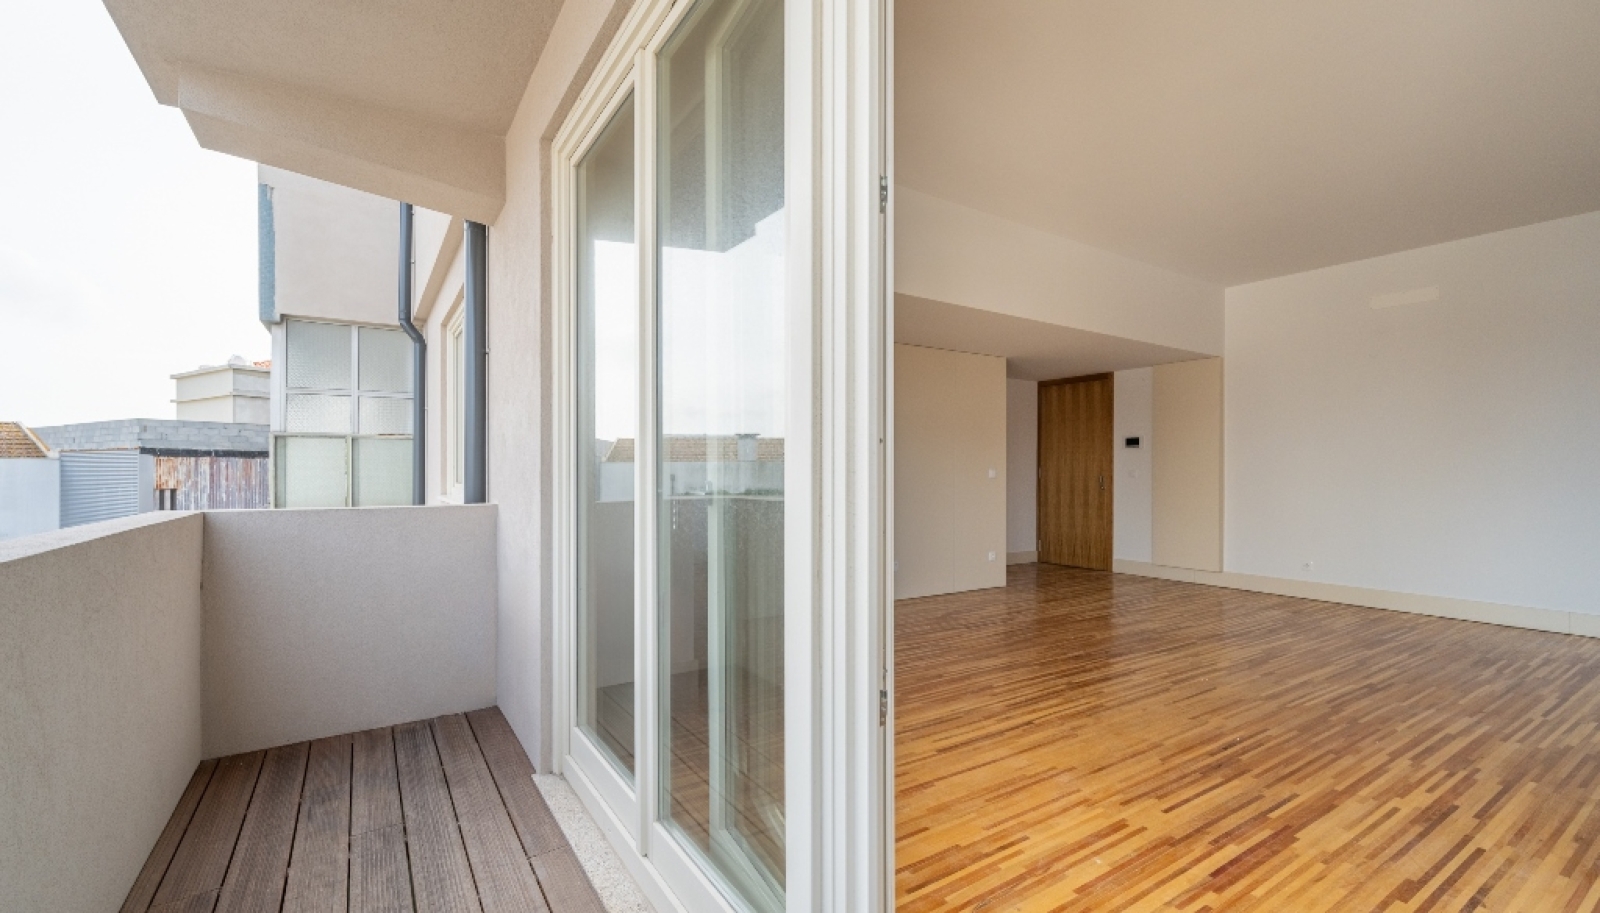 Apartamento T1 com varanda, para venda, no centro do Porto_259170